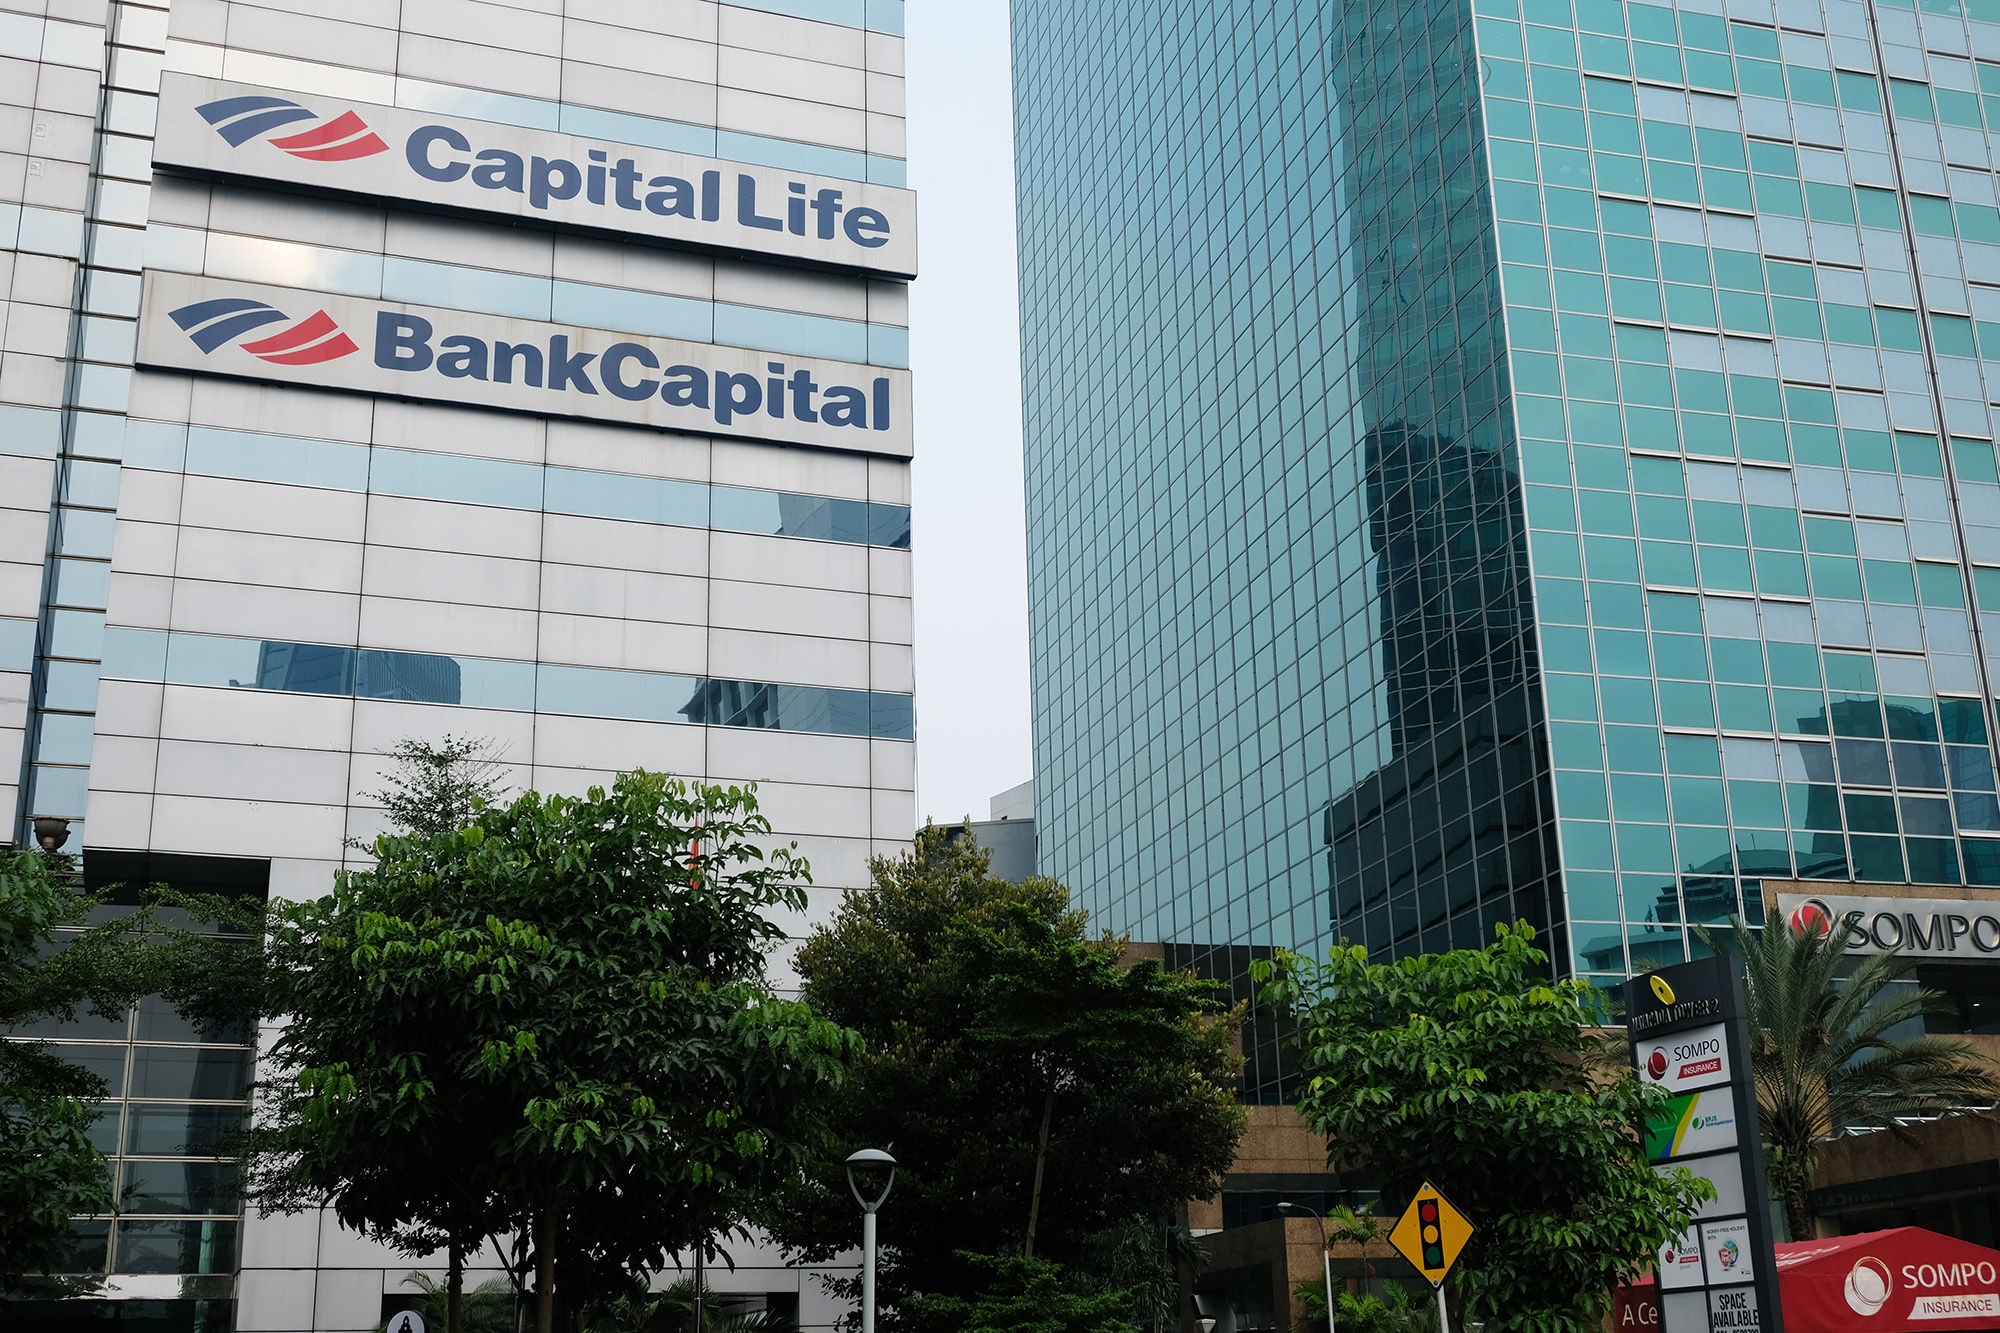 Kantor Bank Capital dan asuransi Capital Life di Jakarta. Foto: Ismail Pohan/TrenAsia